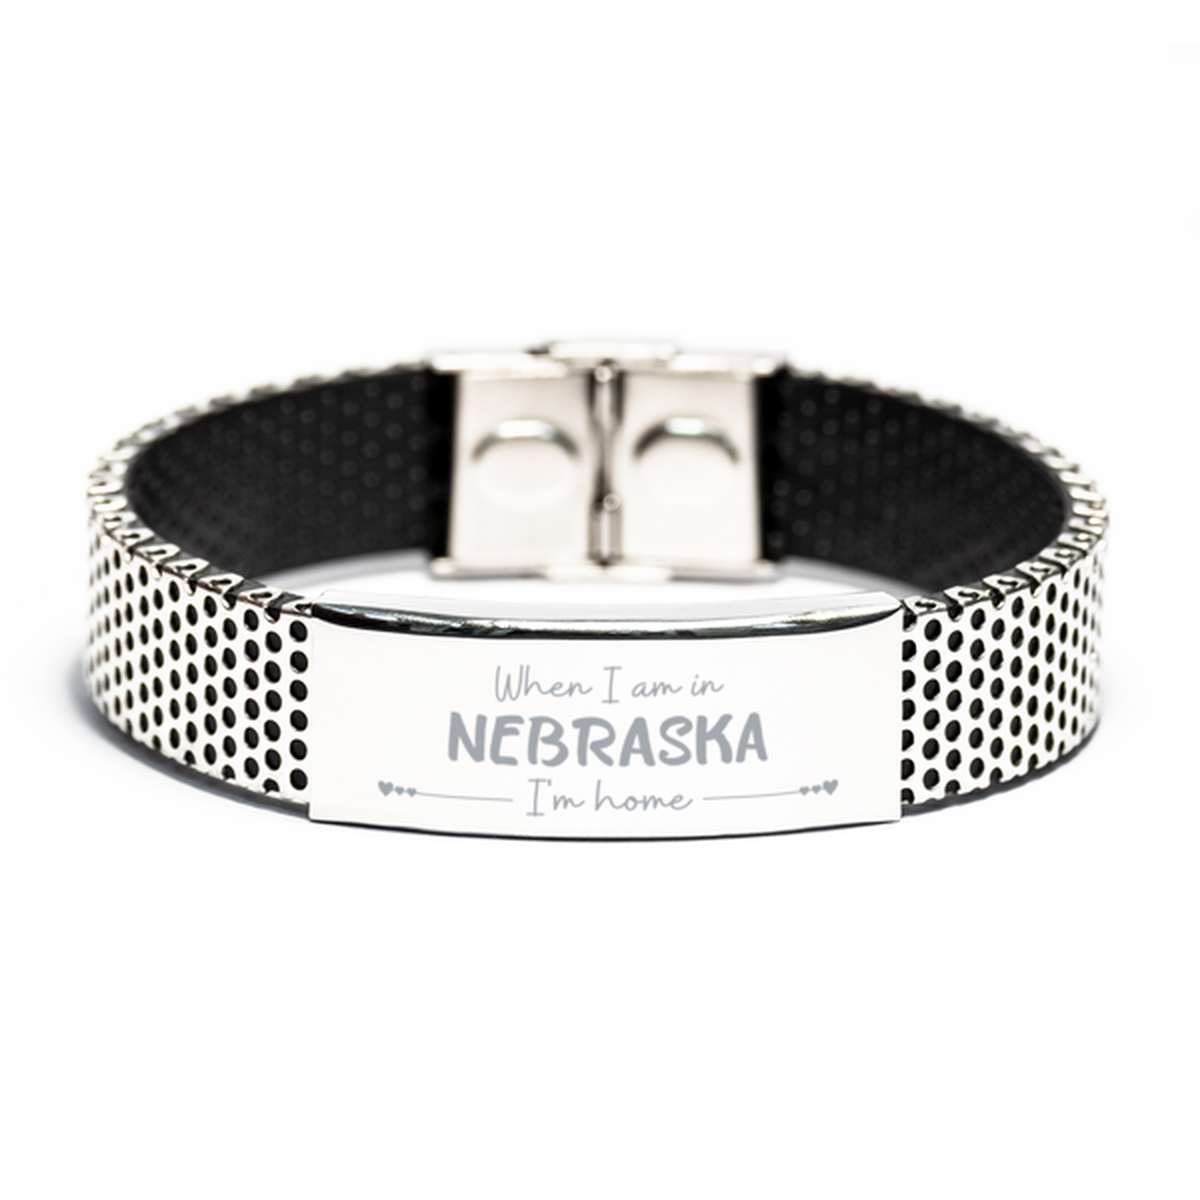 When I am in Nebraska I'm home Stainless Steel Bracelet, Cheap Gifts For Nebraska, State Nebraska Birthday Gifts for Friends Coworker